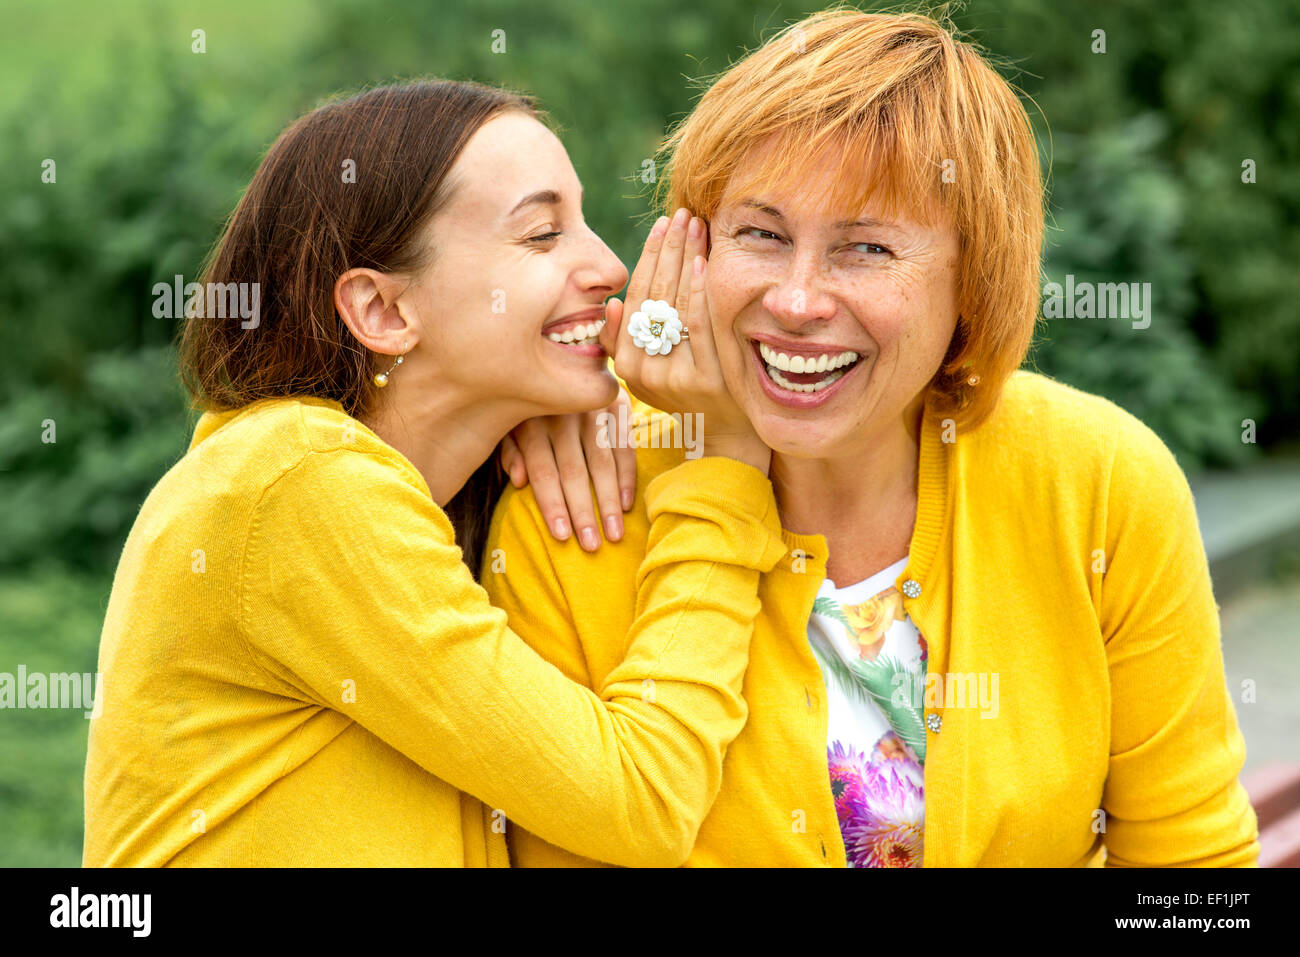 Tochter flüsterte etwas zu ihrer Mutter im park Stockfoto